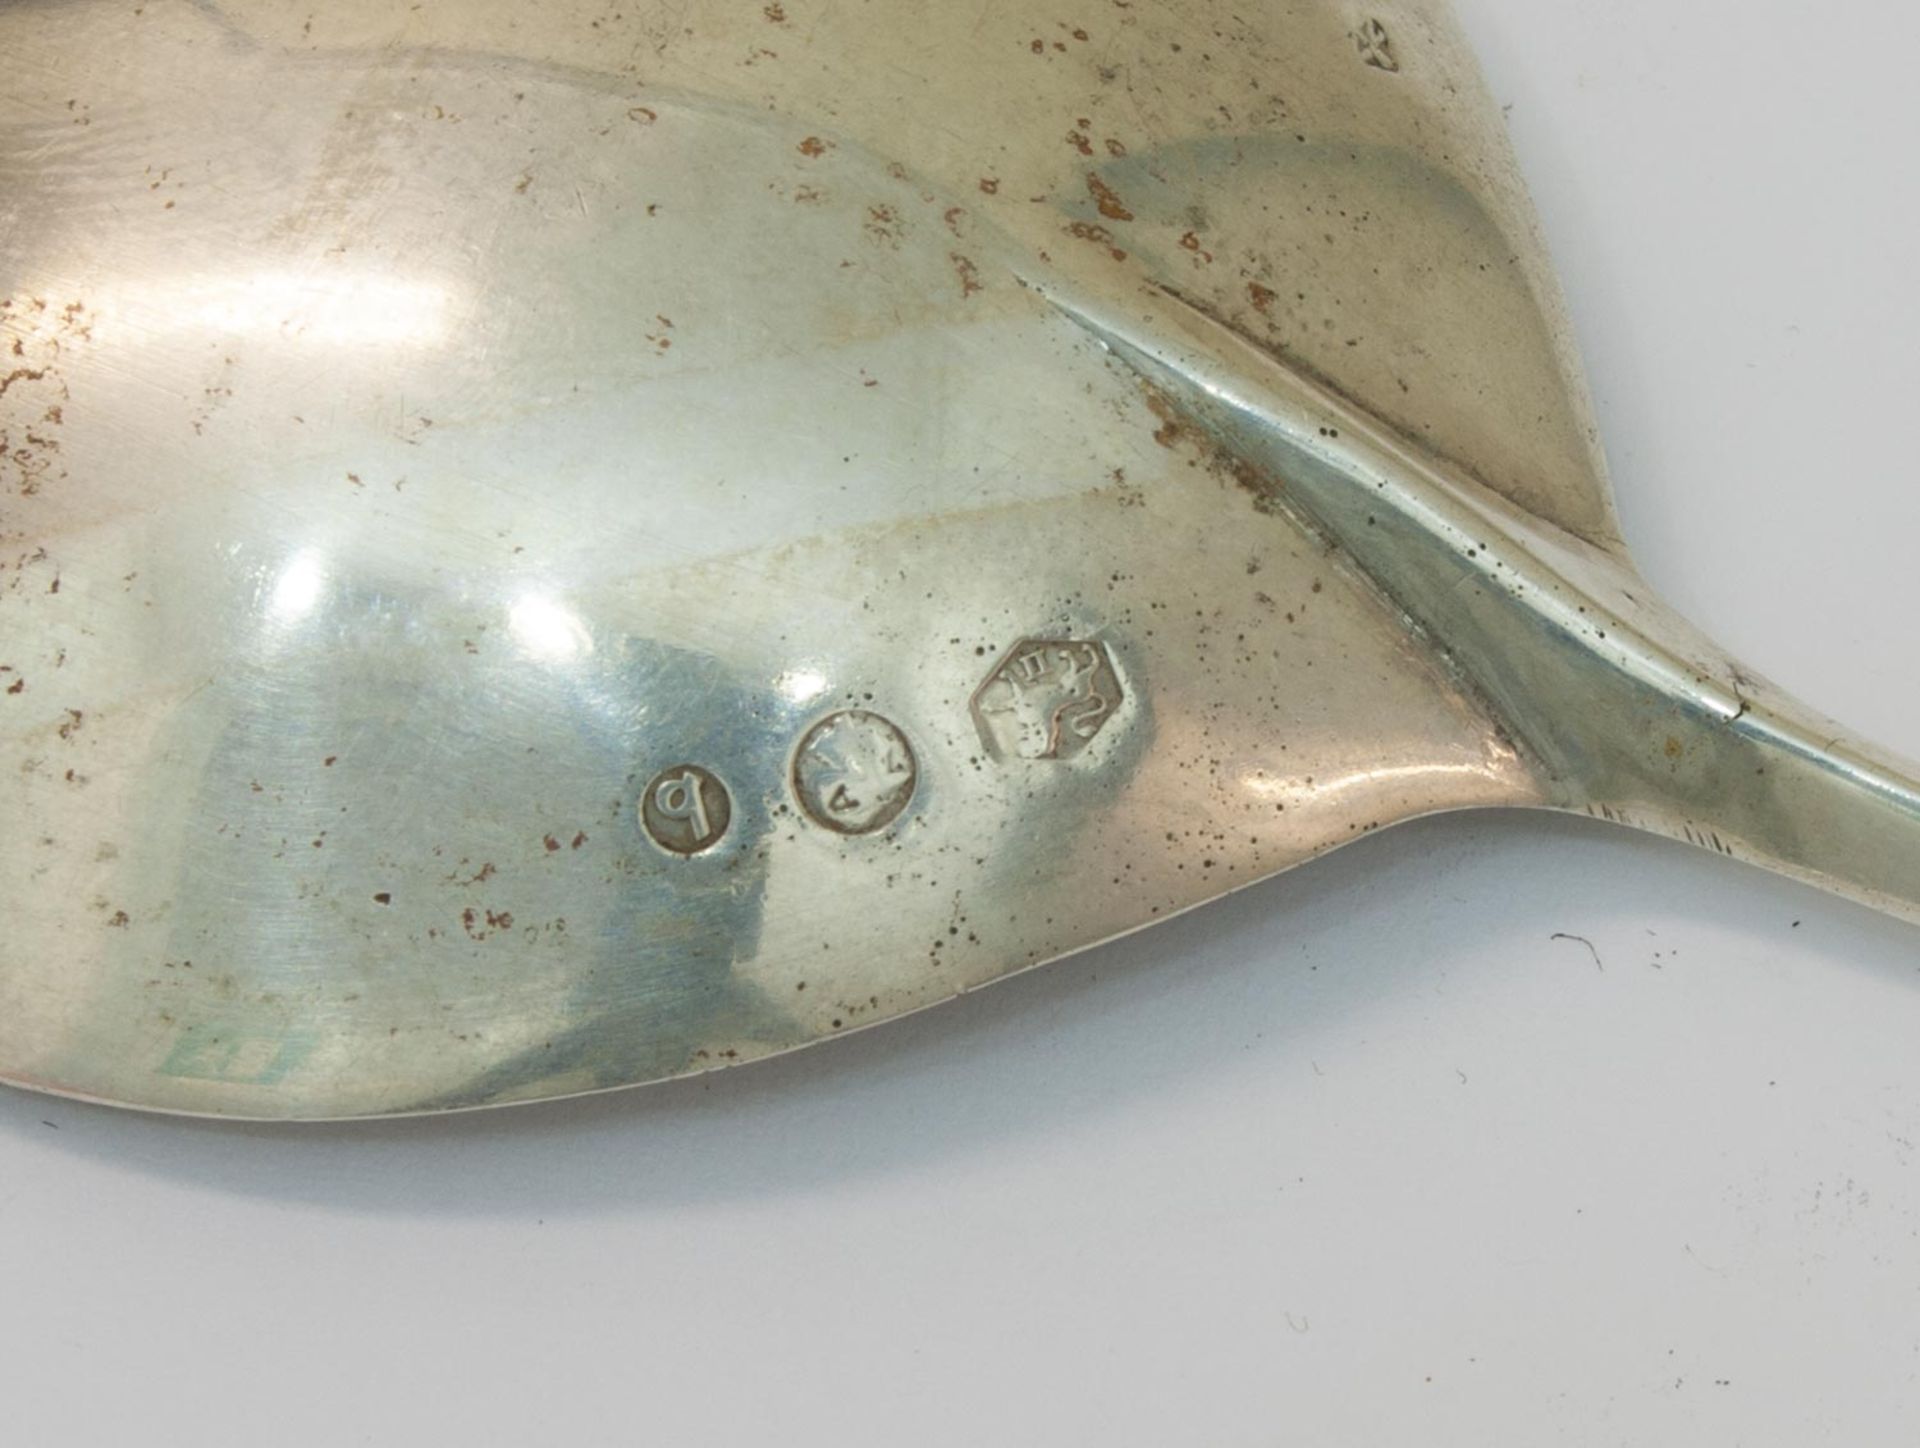 SahnelöffelHolland, Jahresbuchstabe "b" (19. Jh.), 833er Silber, gedrehter Schaft mit - Bild 2 aus 2